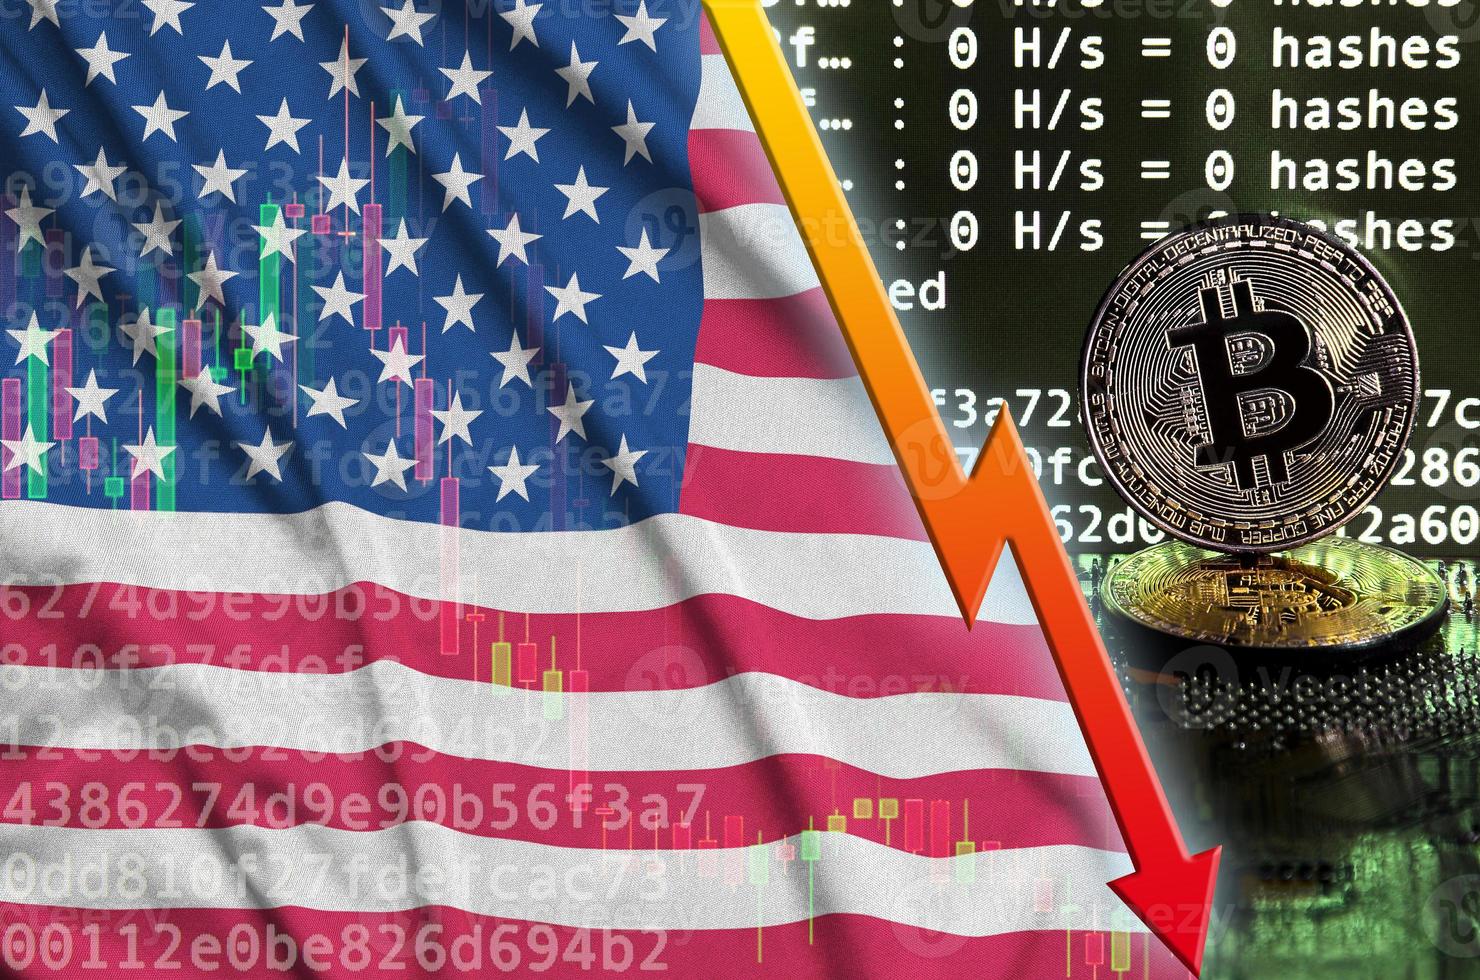 flagge der vereinigten staaten von amerika und fallender roter pfeil auf dem bitcoin-mining-bildschirm und zwei physische goldene bitcoins foto